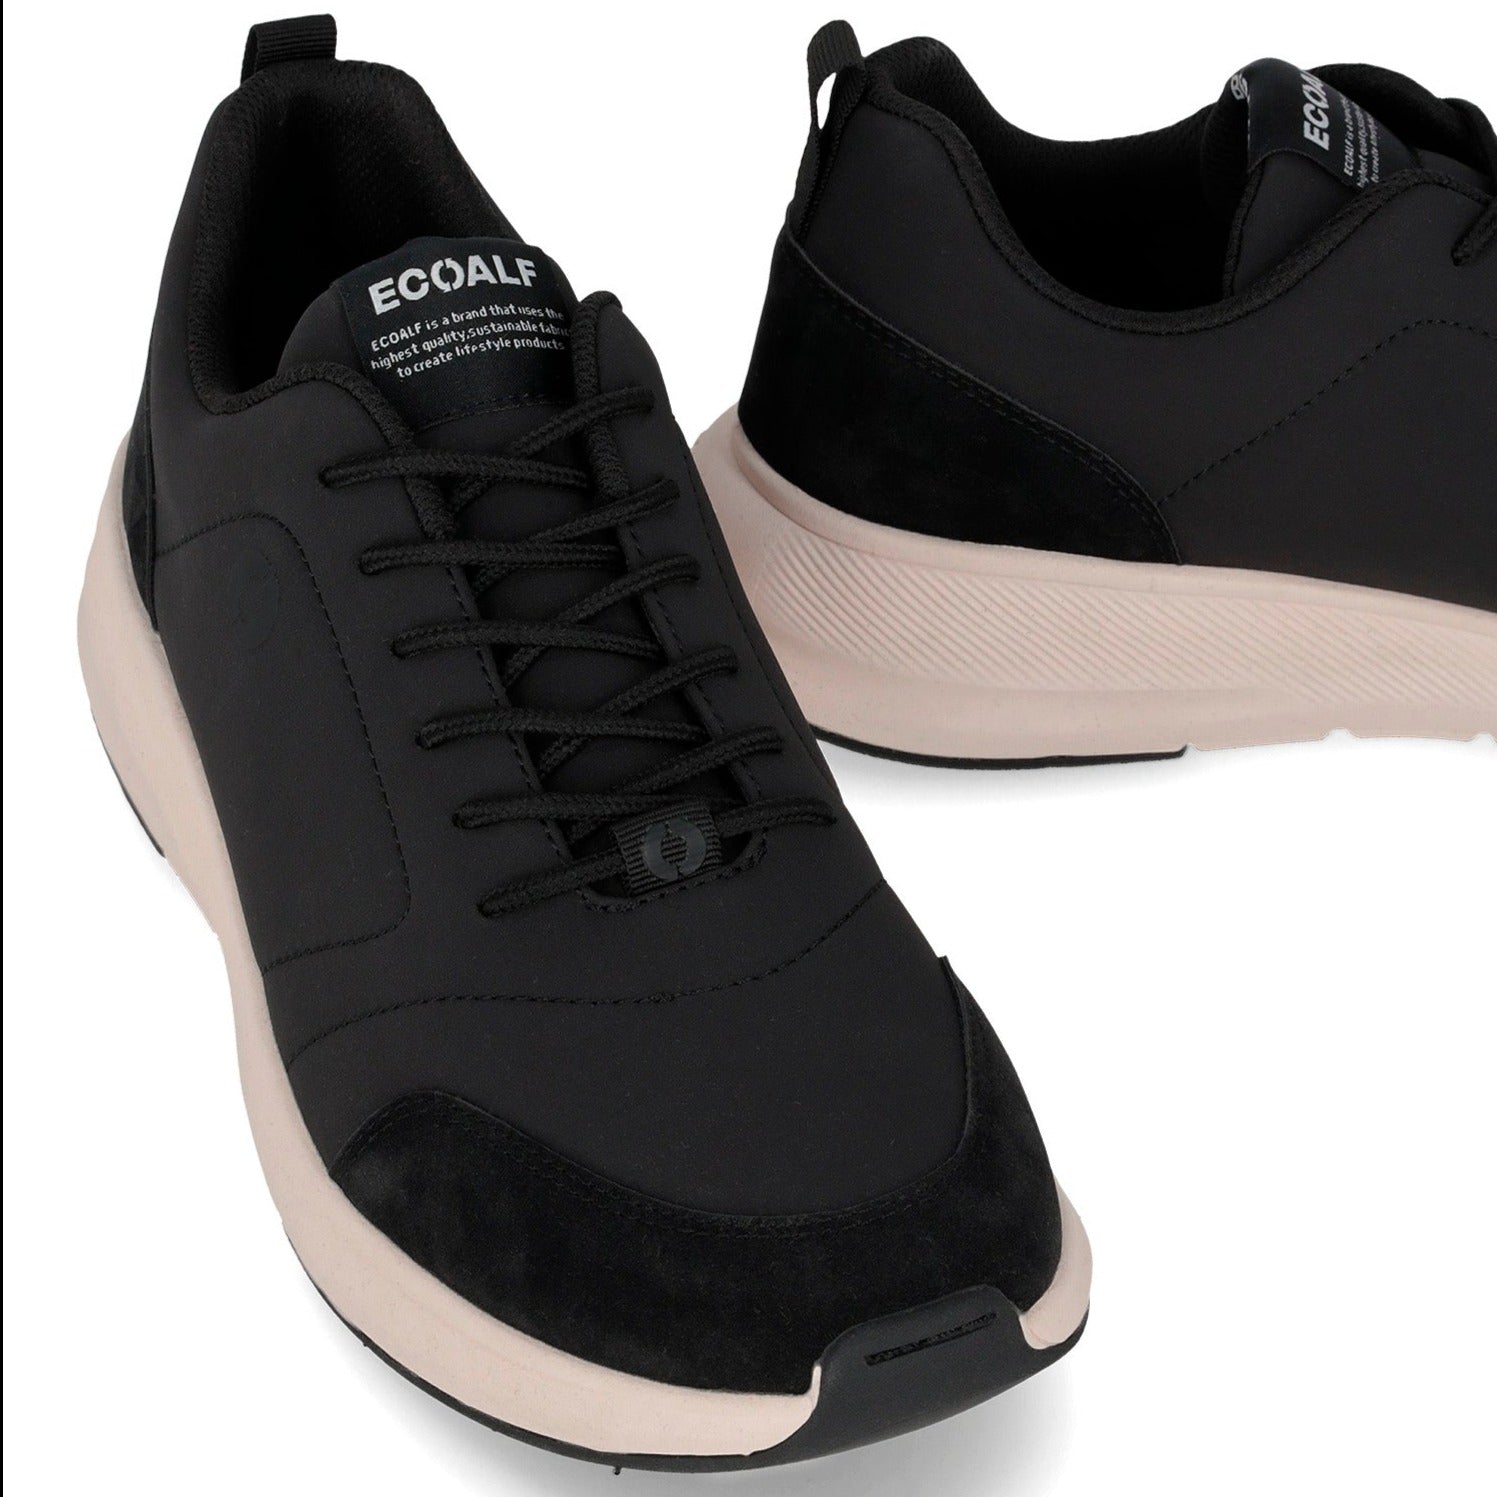 Sneakers De La Marca Ecoalf Para Hombre Modelo Amiata BlackEn Color Negro